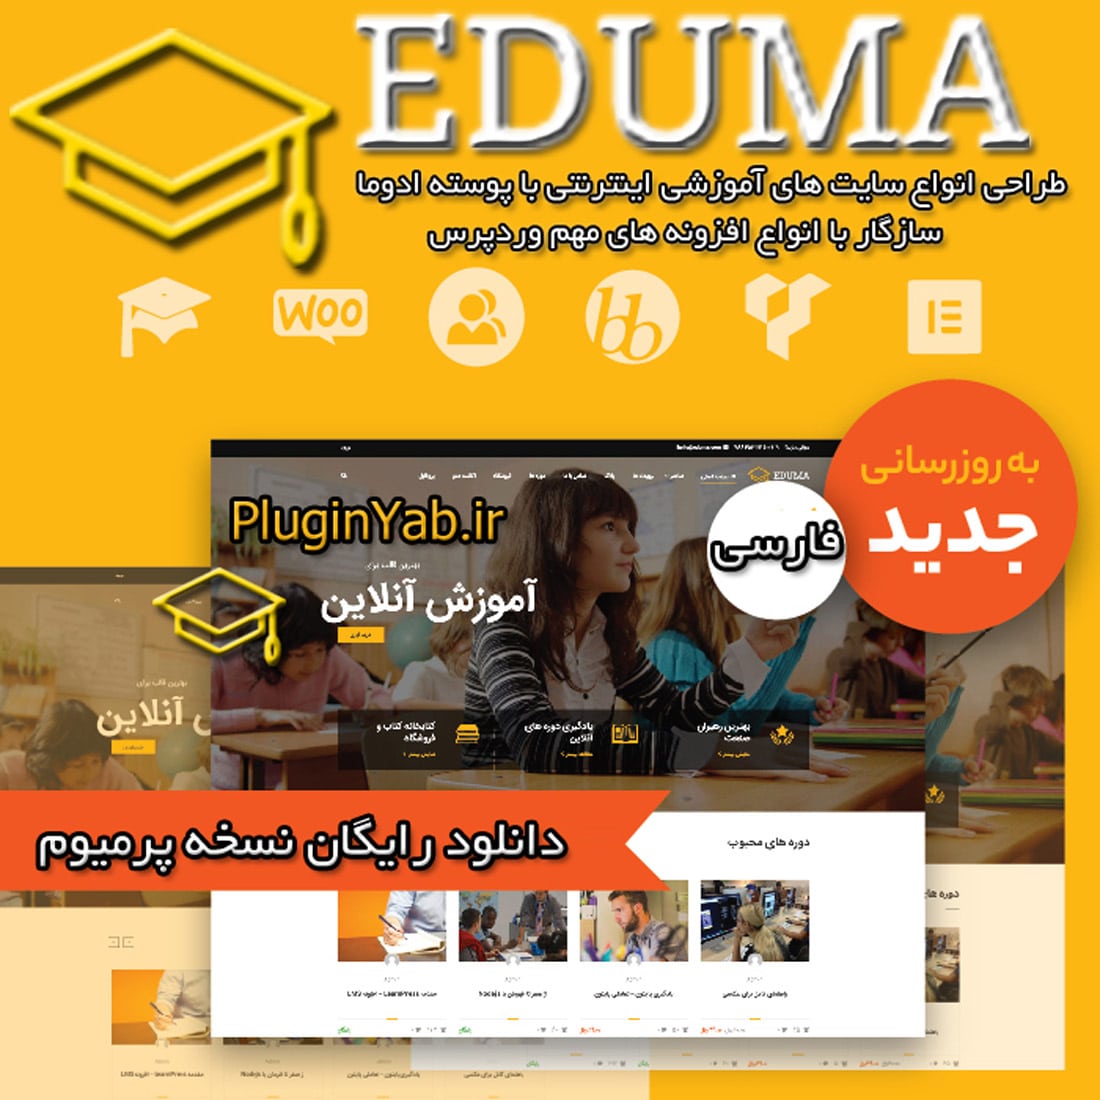 دانلود رایگان قالب آموزش آنلاین ادما اجوما فارسی لایسنس اورجینال بروز Eduma